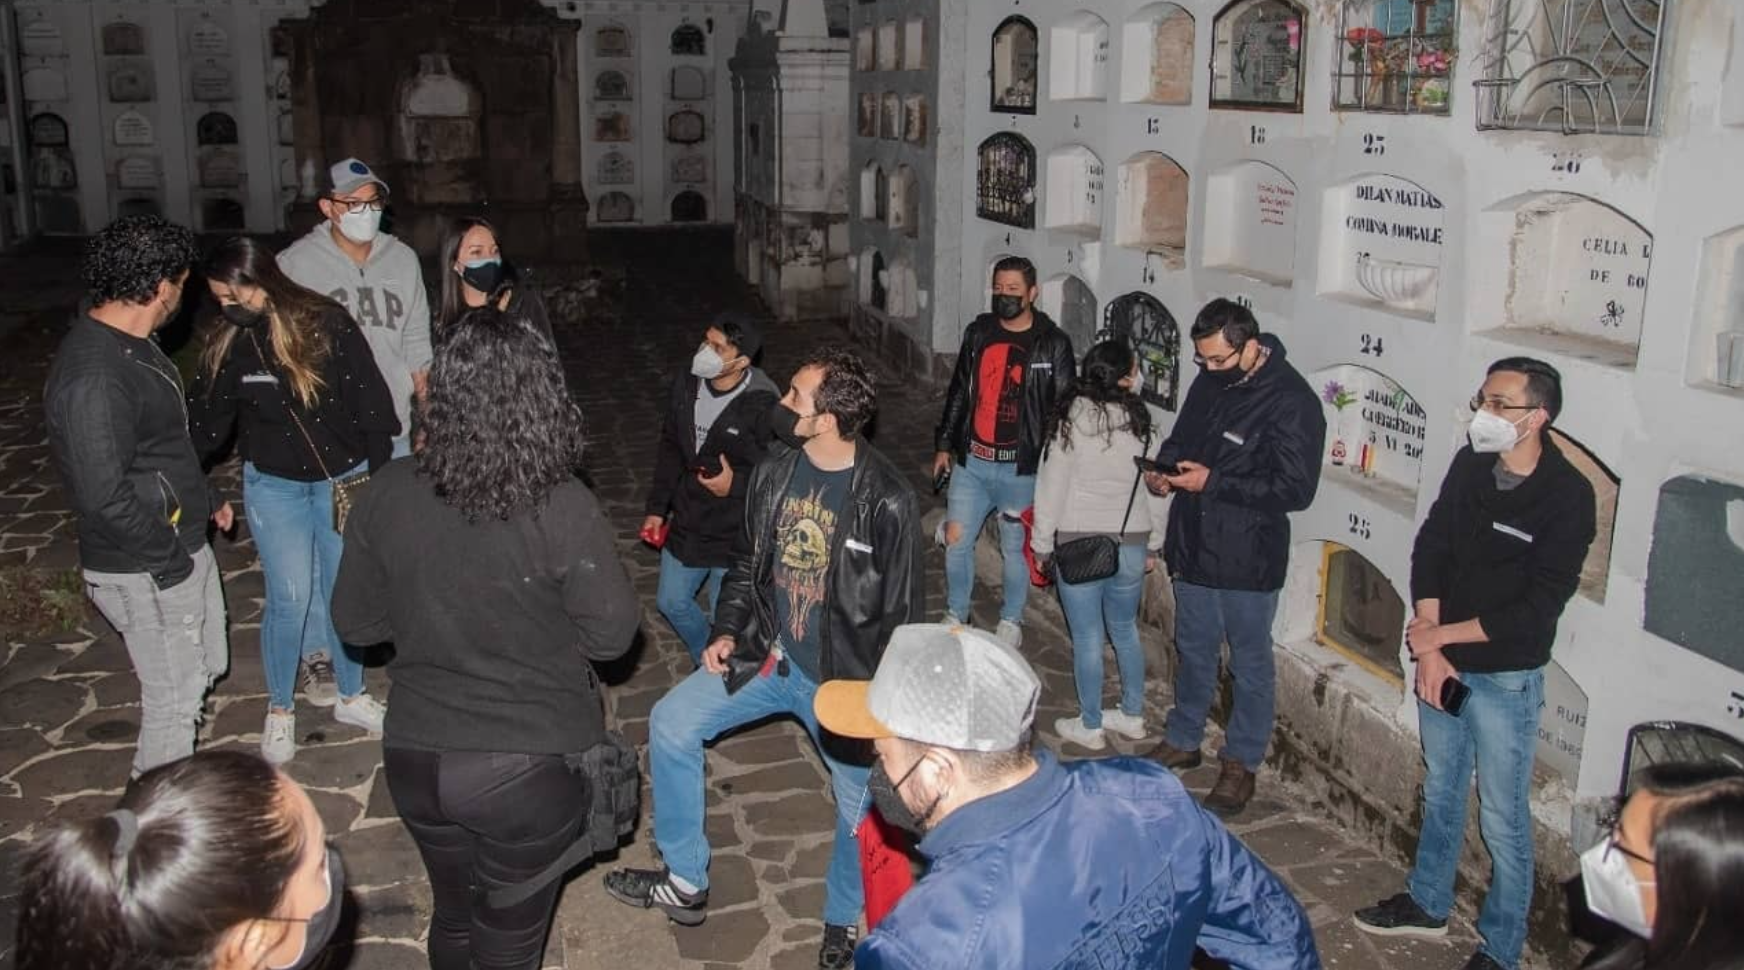 RECORRIDO. Quito Post Mortem realiza recorridos nocturnos en el cementerio de El Tejar y cuenta sus historias y leyendas. (Foto tomada de Quito Post Mortem)